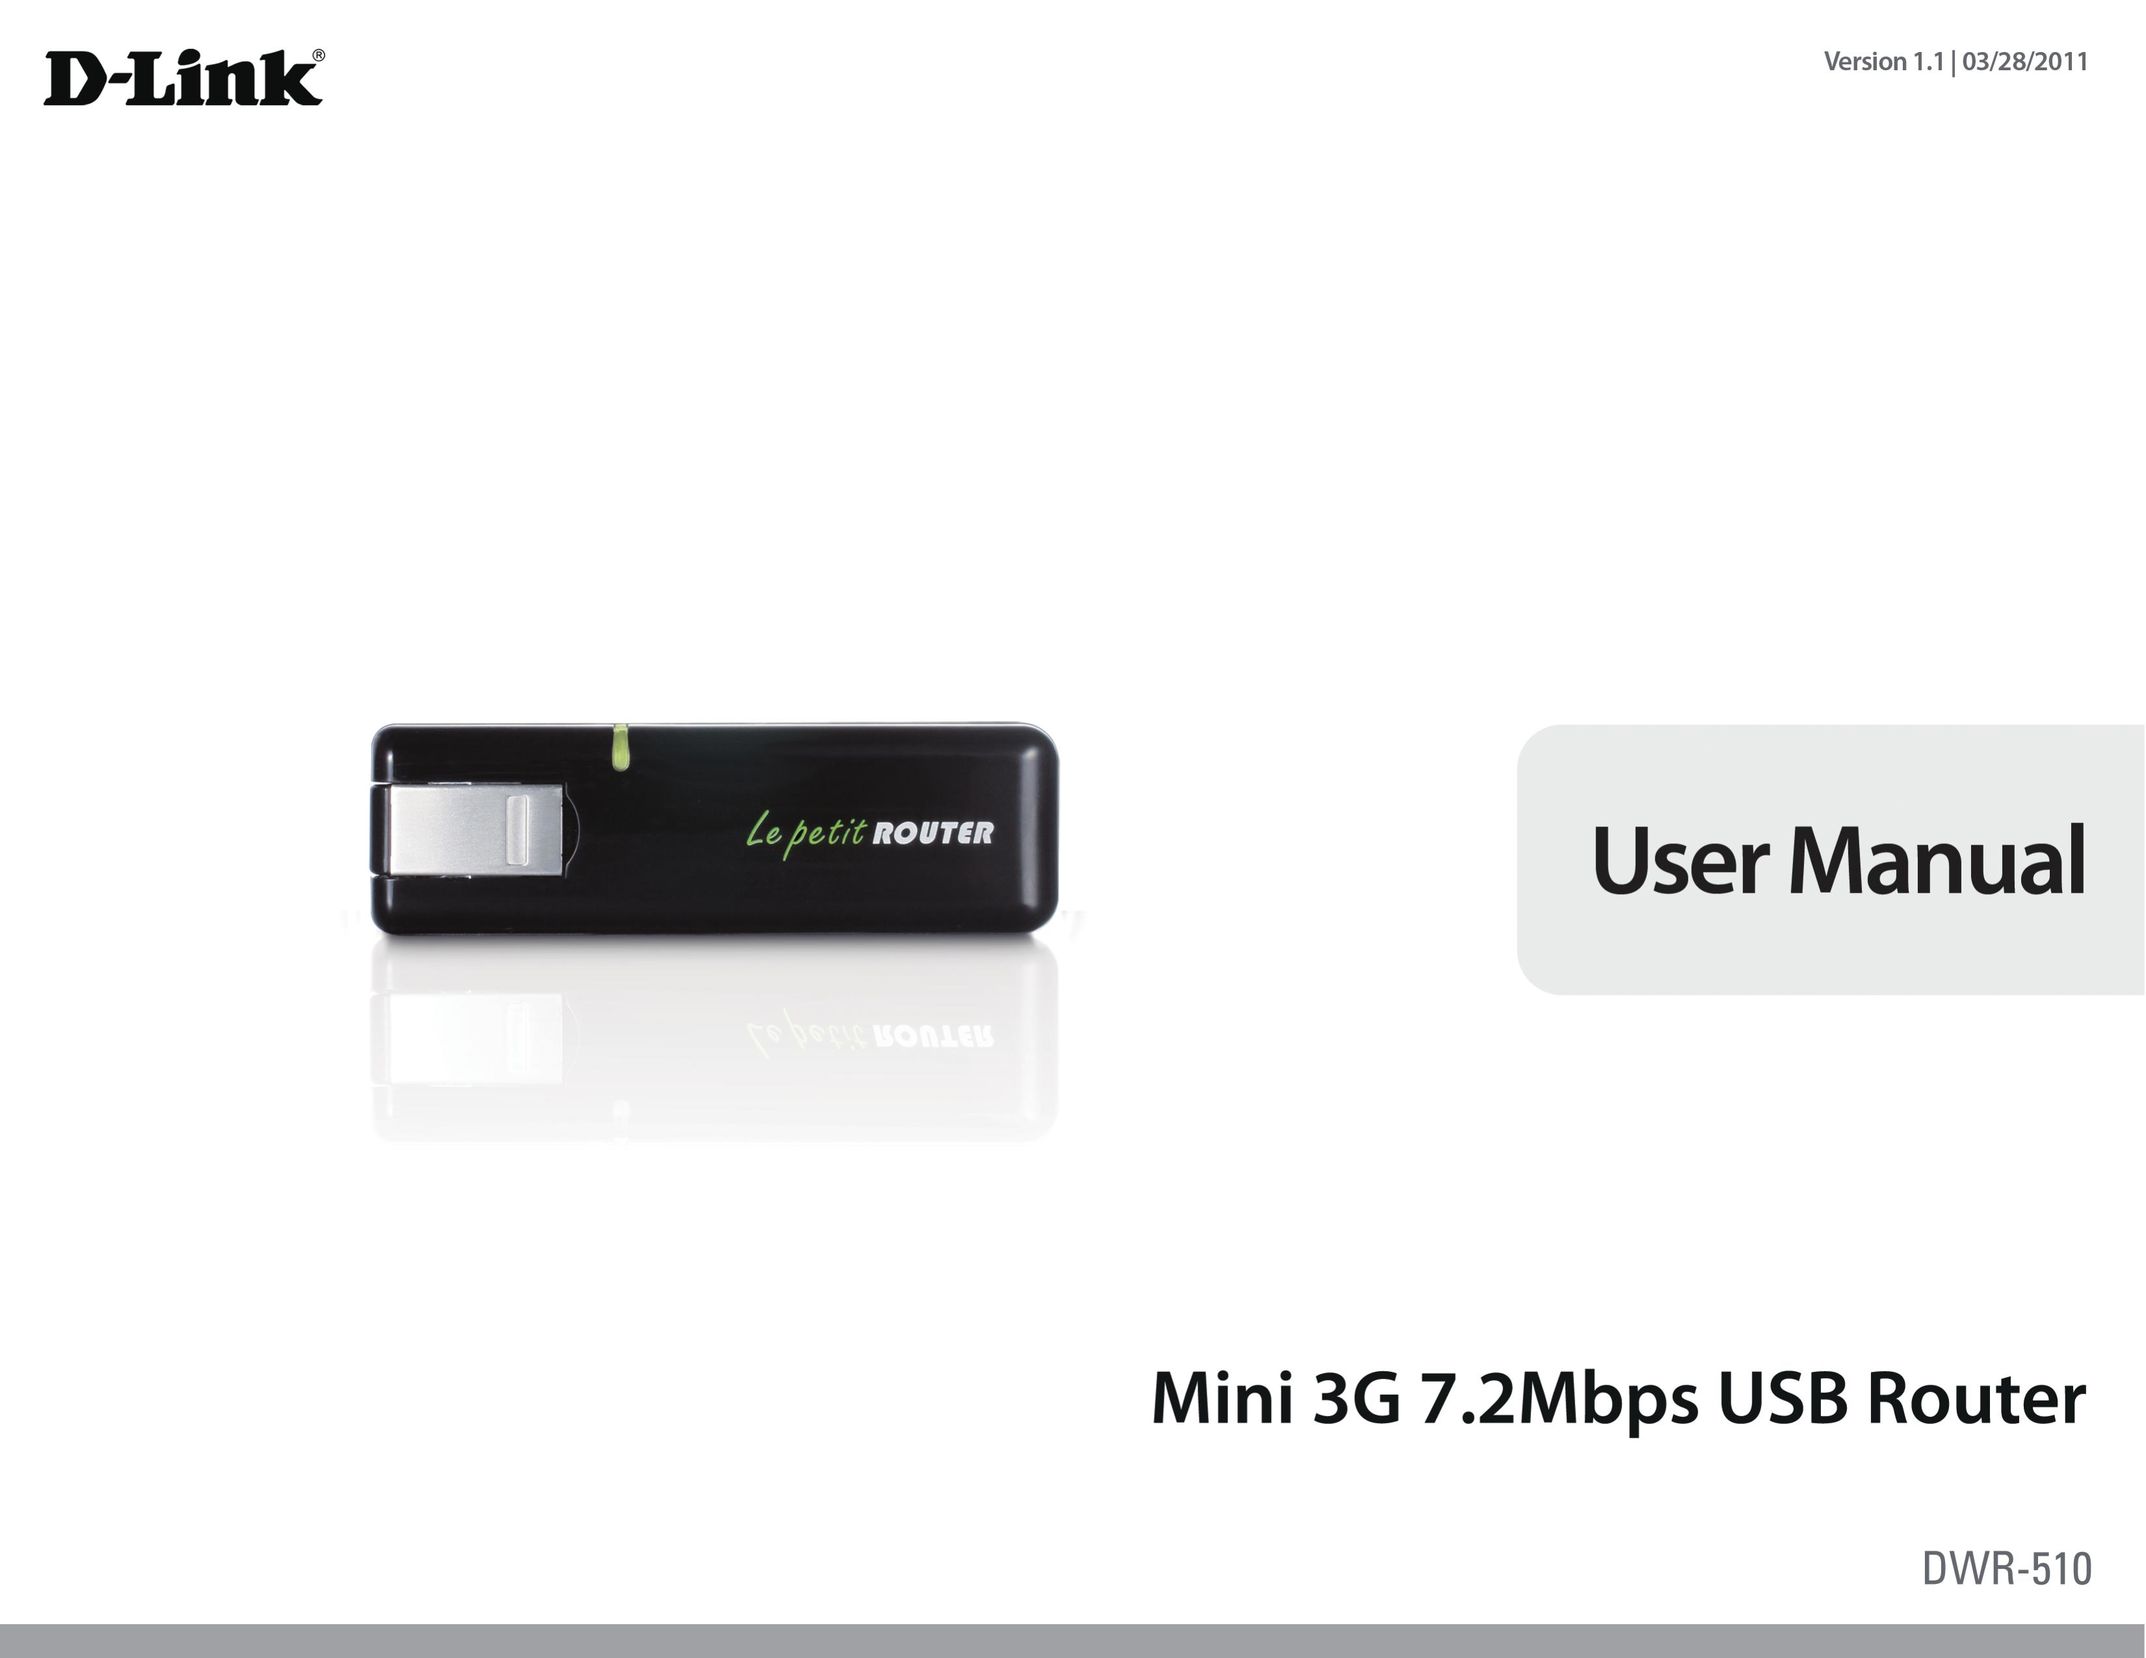 D-Link DWR-510 Webcam User Manual